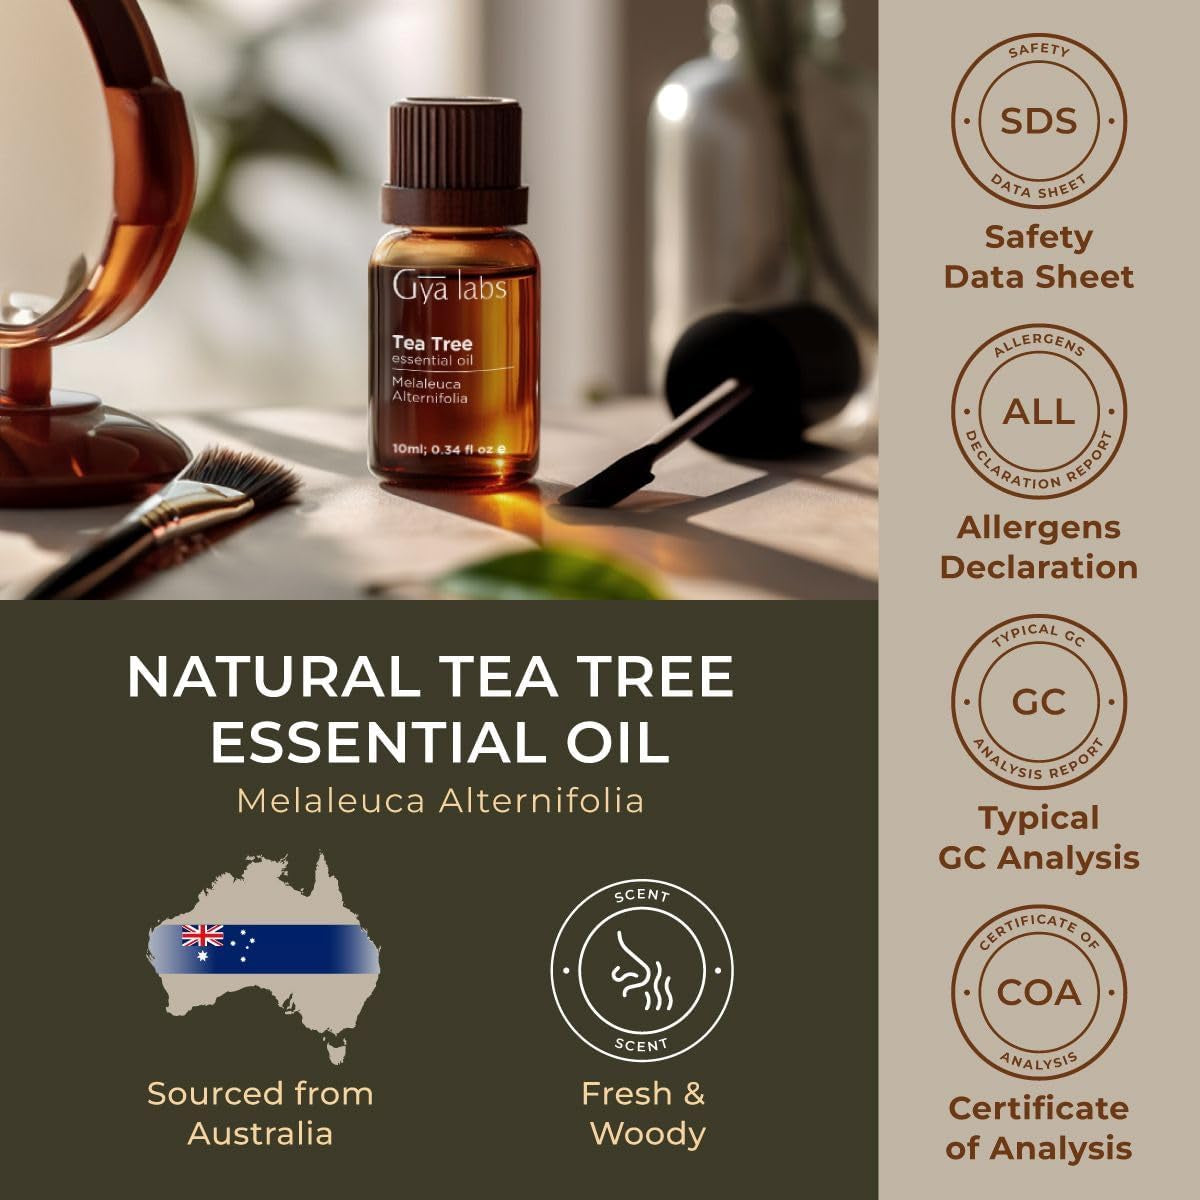 Australian Tea Tree Oil for Skin, Hair, Face & Toenails - 100% Natural Melaleuca Essential Oil for Piercings, Scalp & Hair (0.34 Fl Oz)